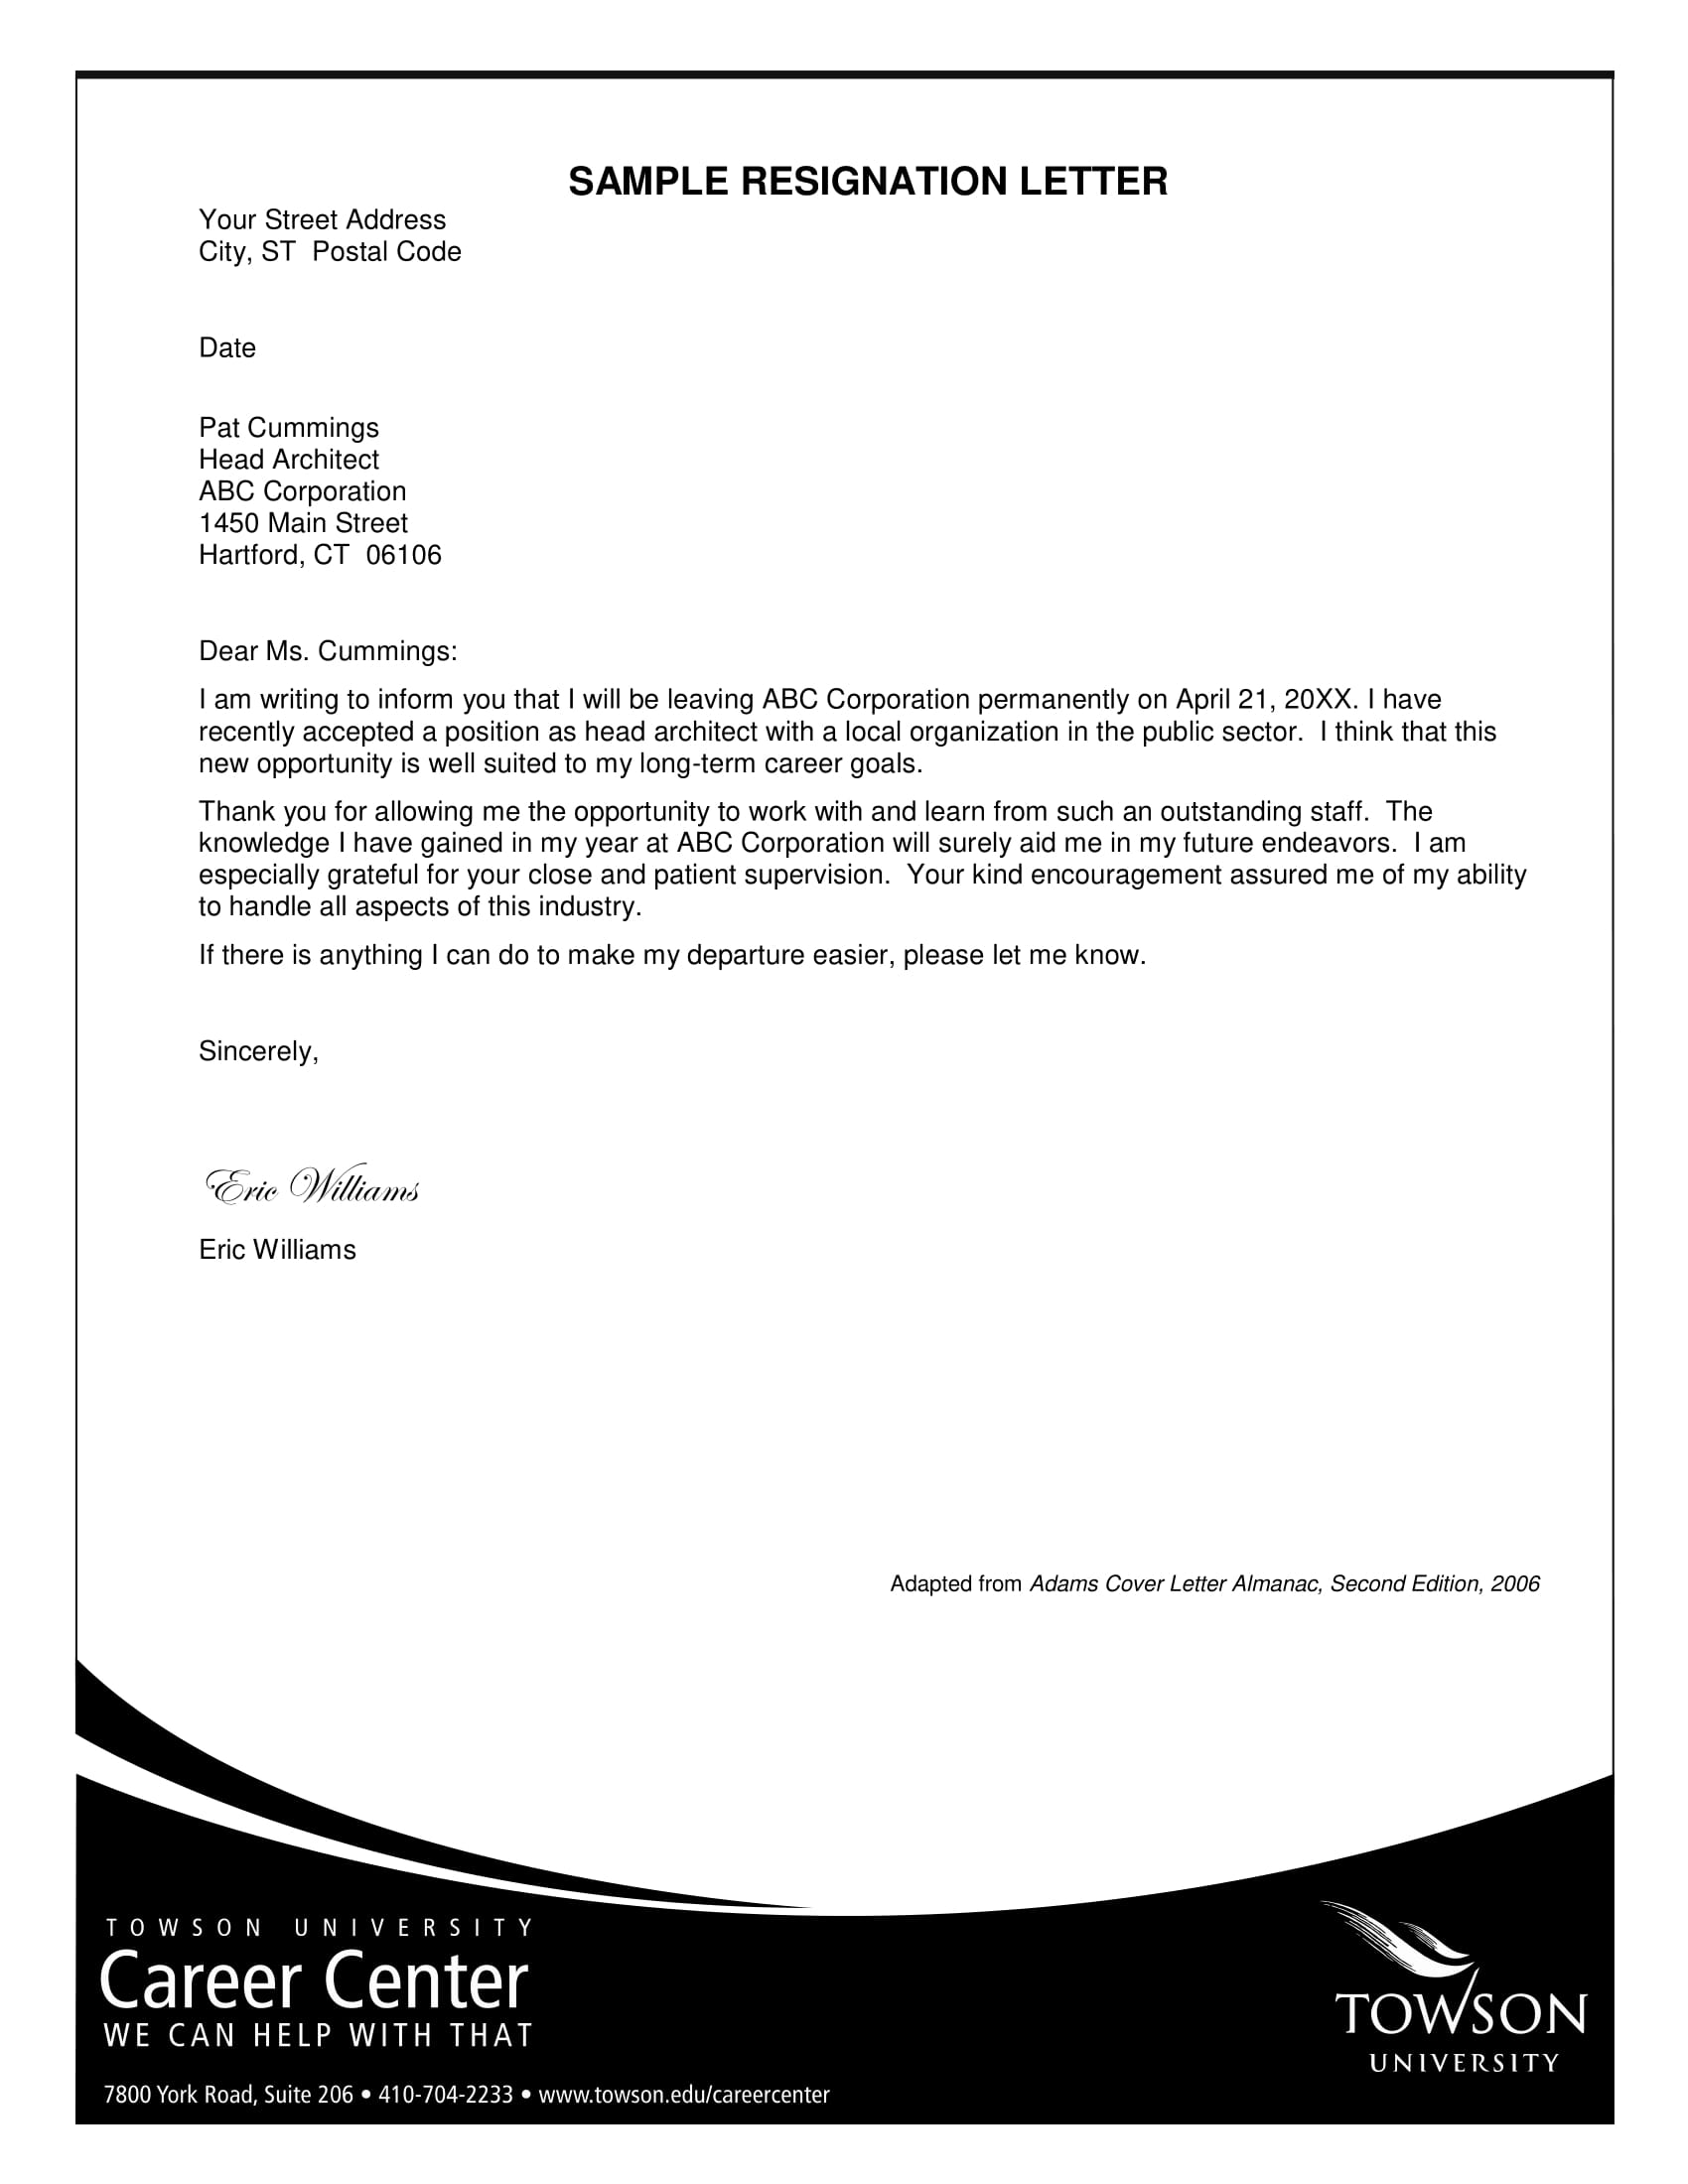 Call Center Resignation Letter - Sample Resignation Letter